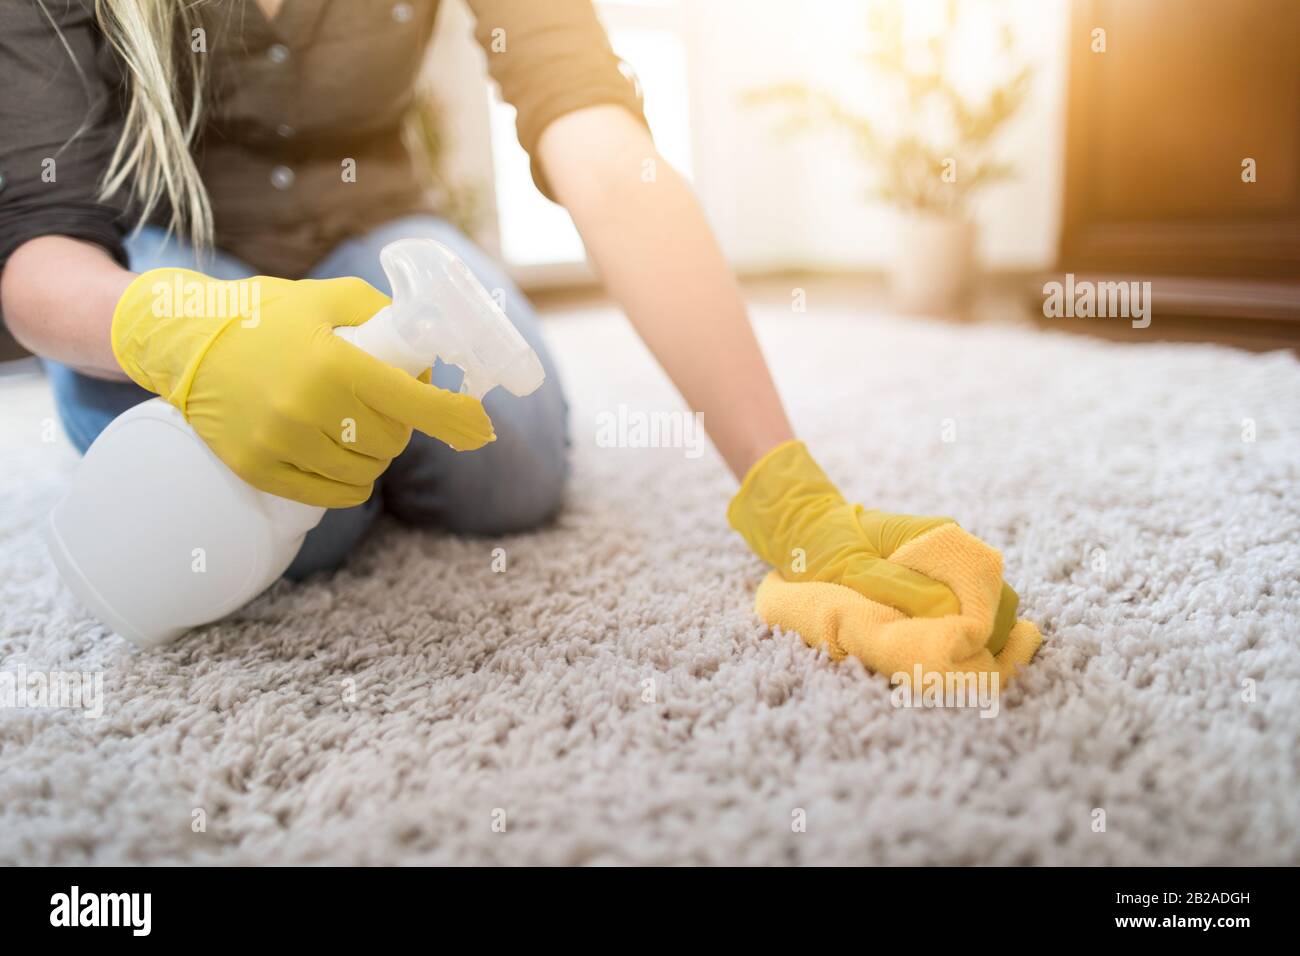 Ama de casa limpiando la alfombra con cepillo y haciendo las tareas domésticas. Foto de stock